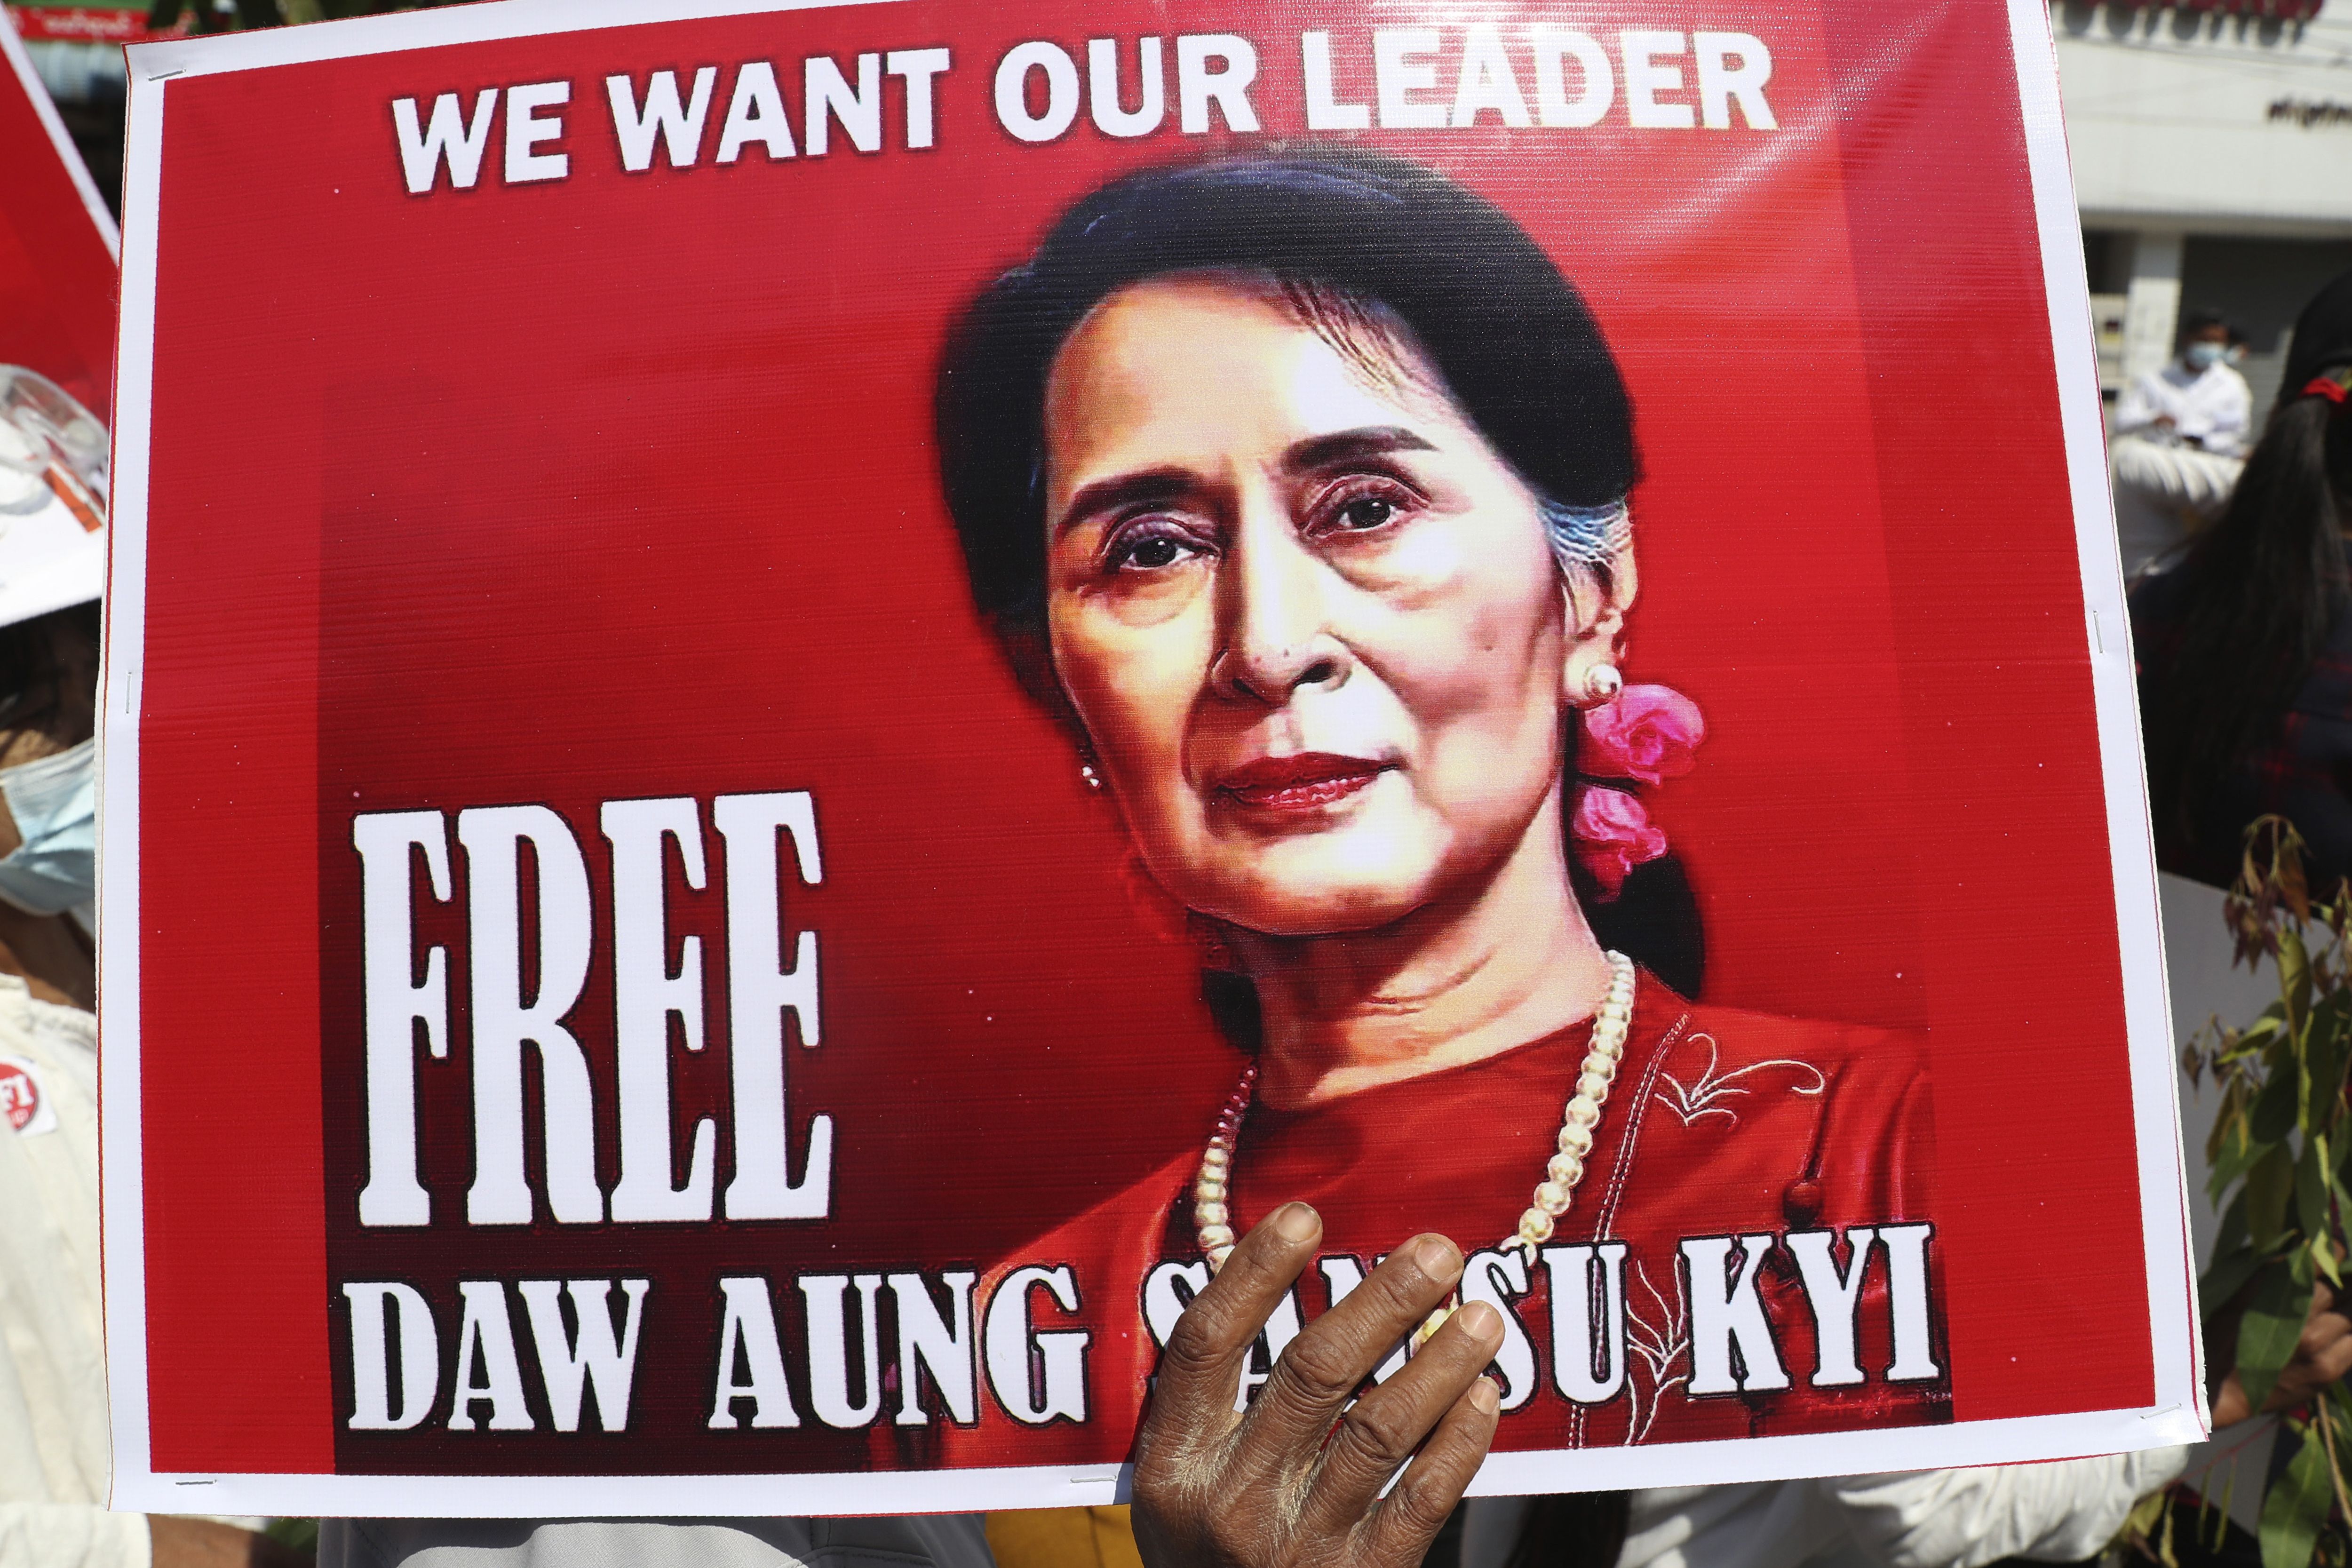 スー・チーは「ミャンマー民主化の旗手」たりえるか大国の思惑に翻弄されないために卓抜した政治力が必要なのだが - アジア